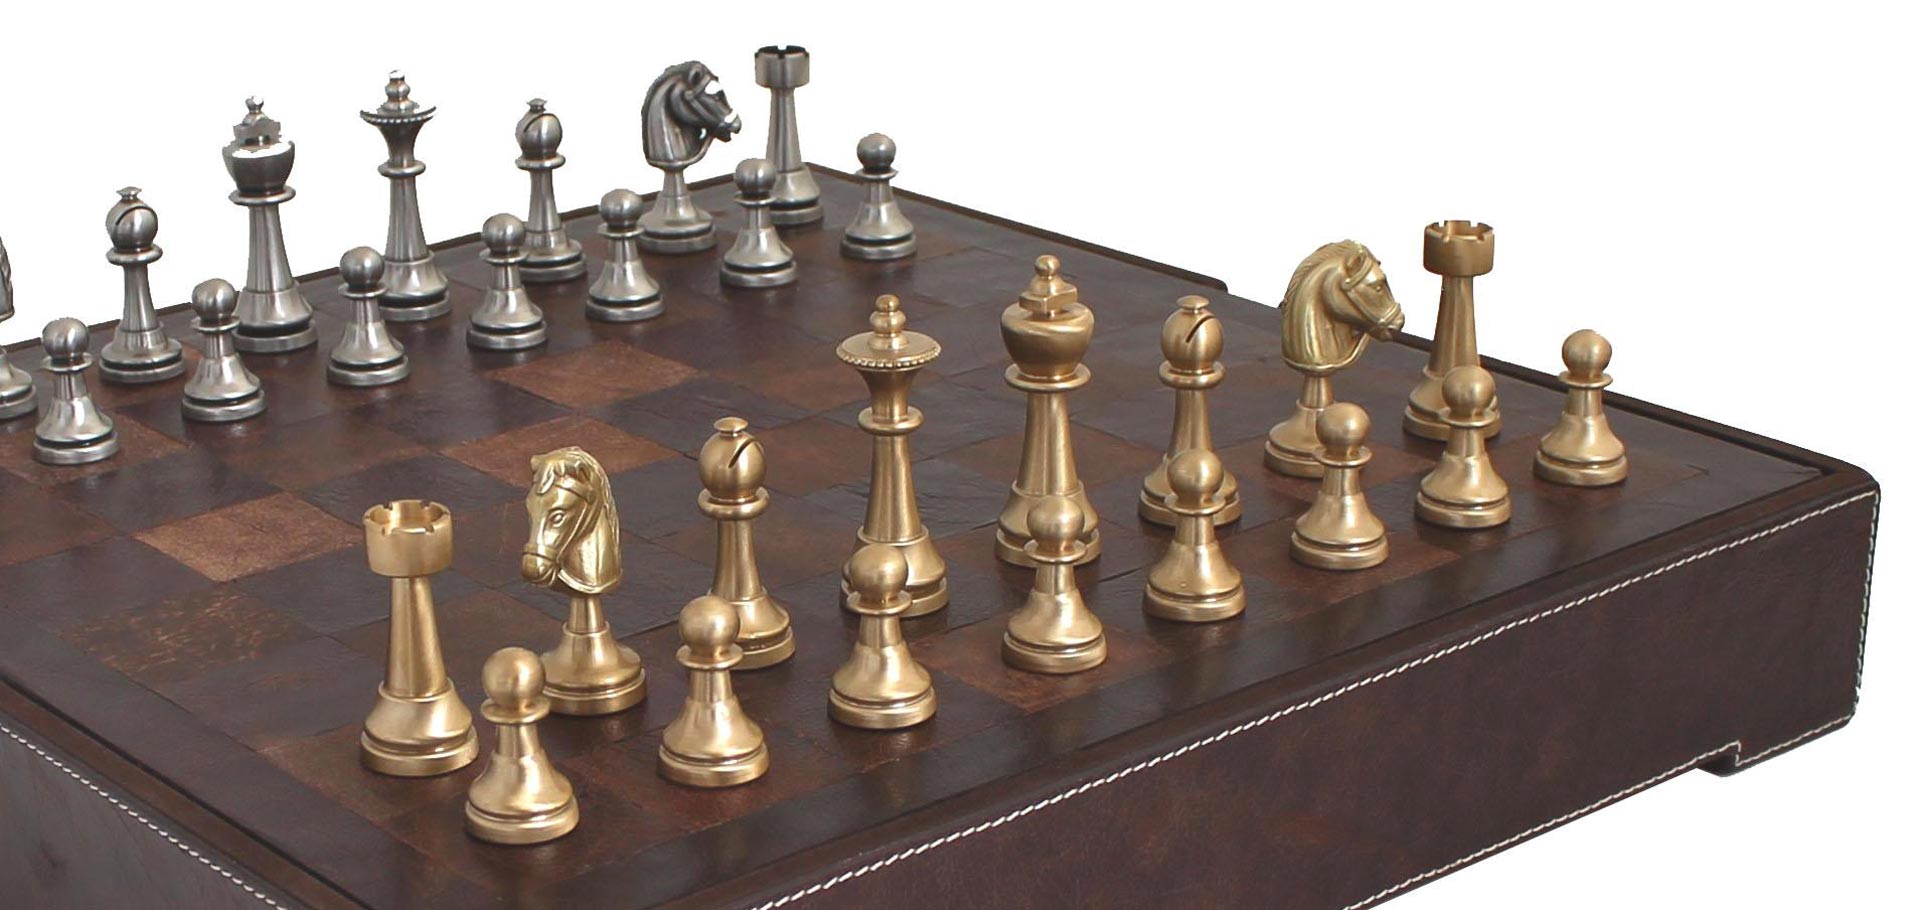 Schachspiel Schach Reisesch Brettspiel aus Holz Größe 34x34cm Gesellschaftsspiel 